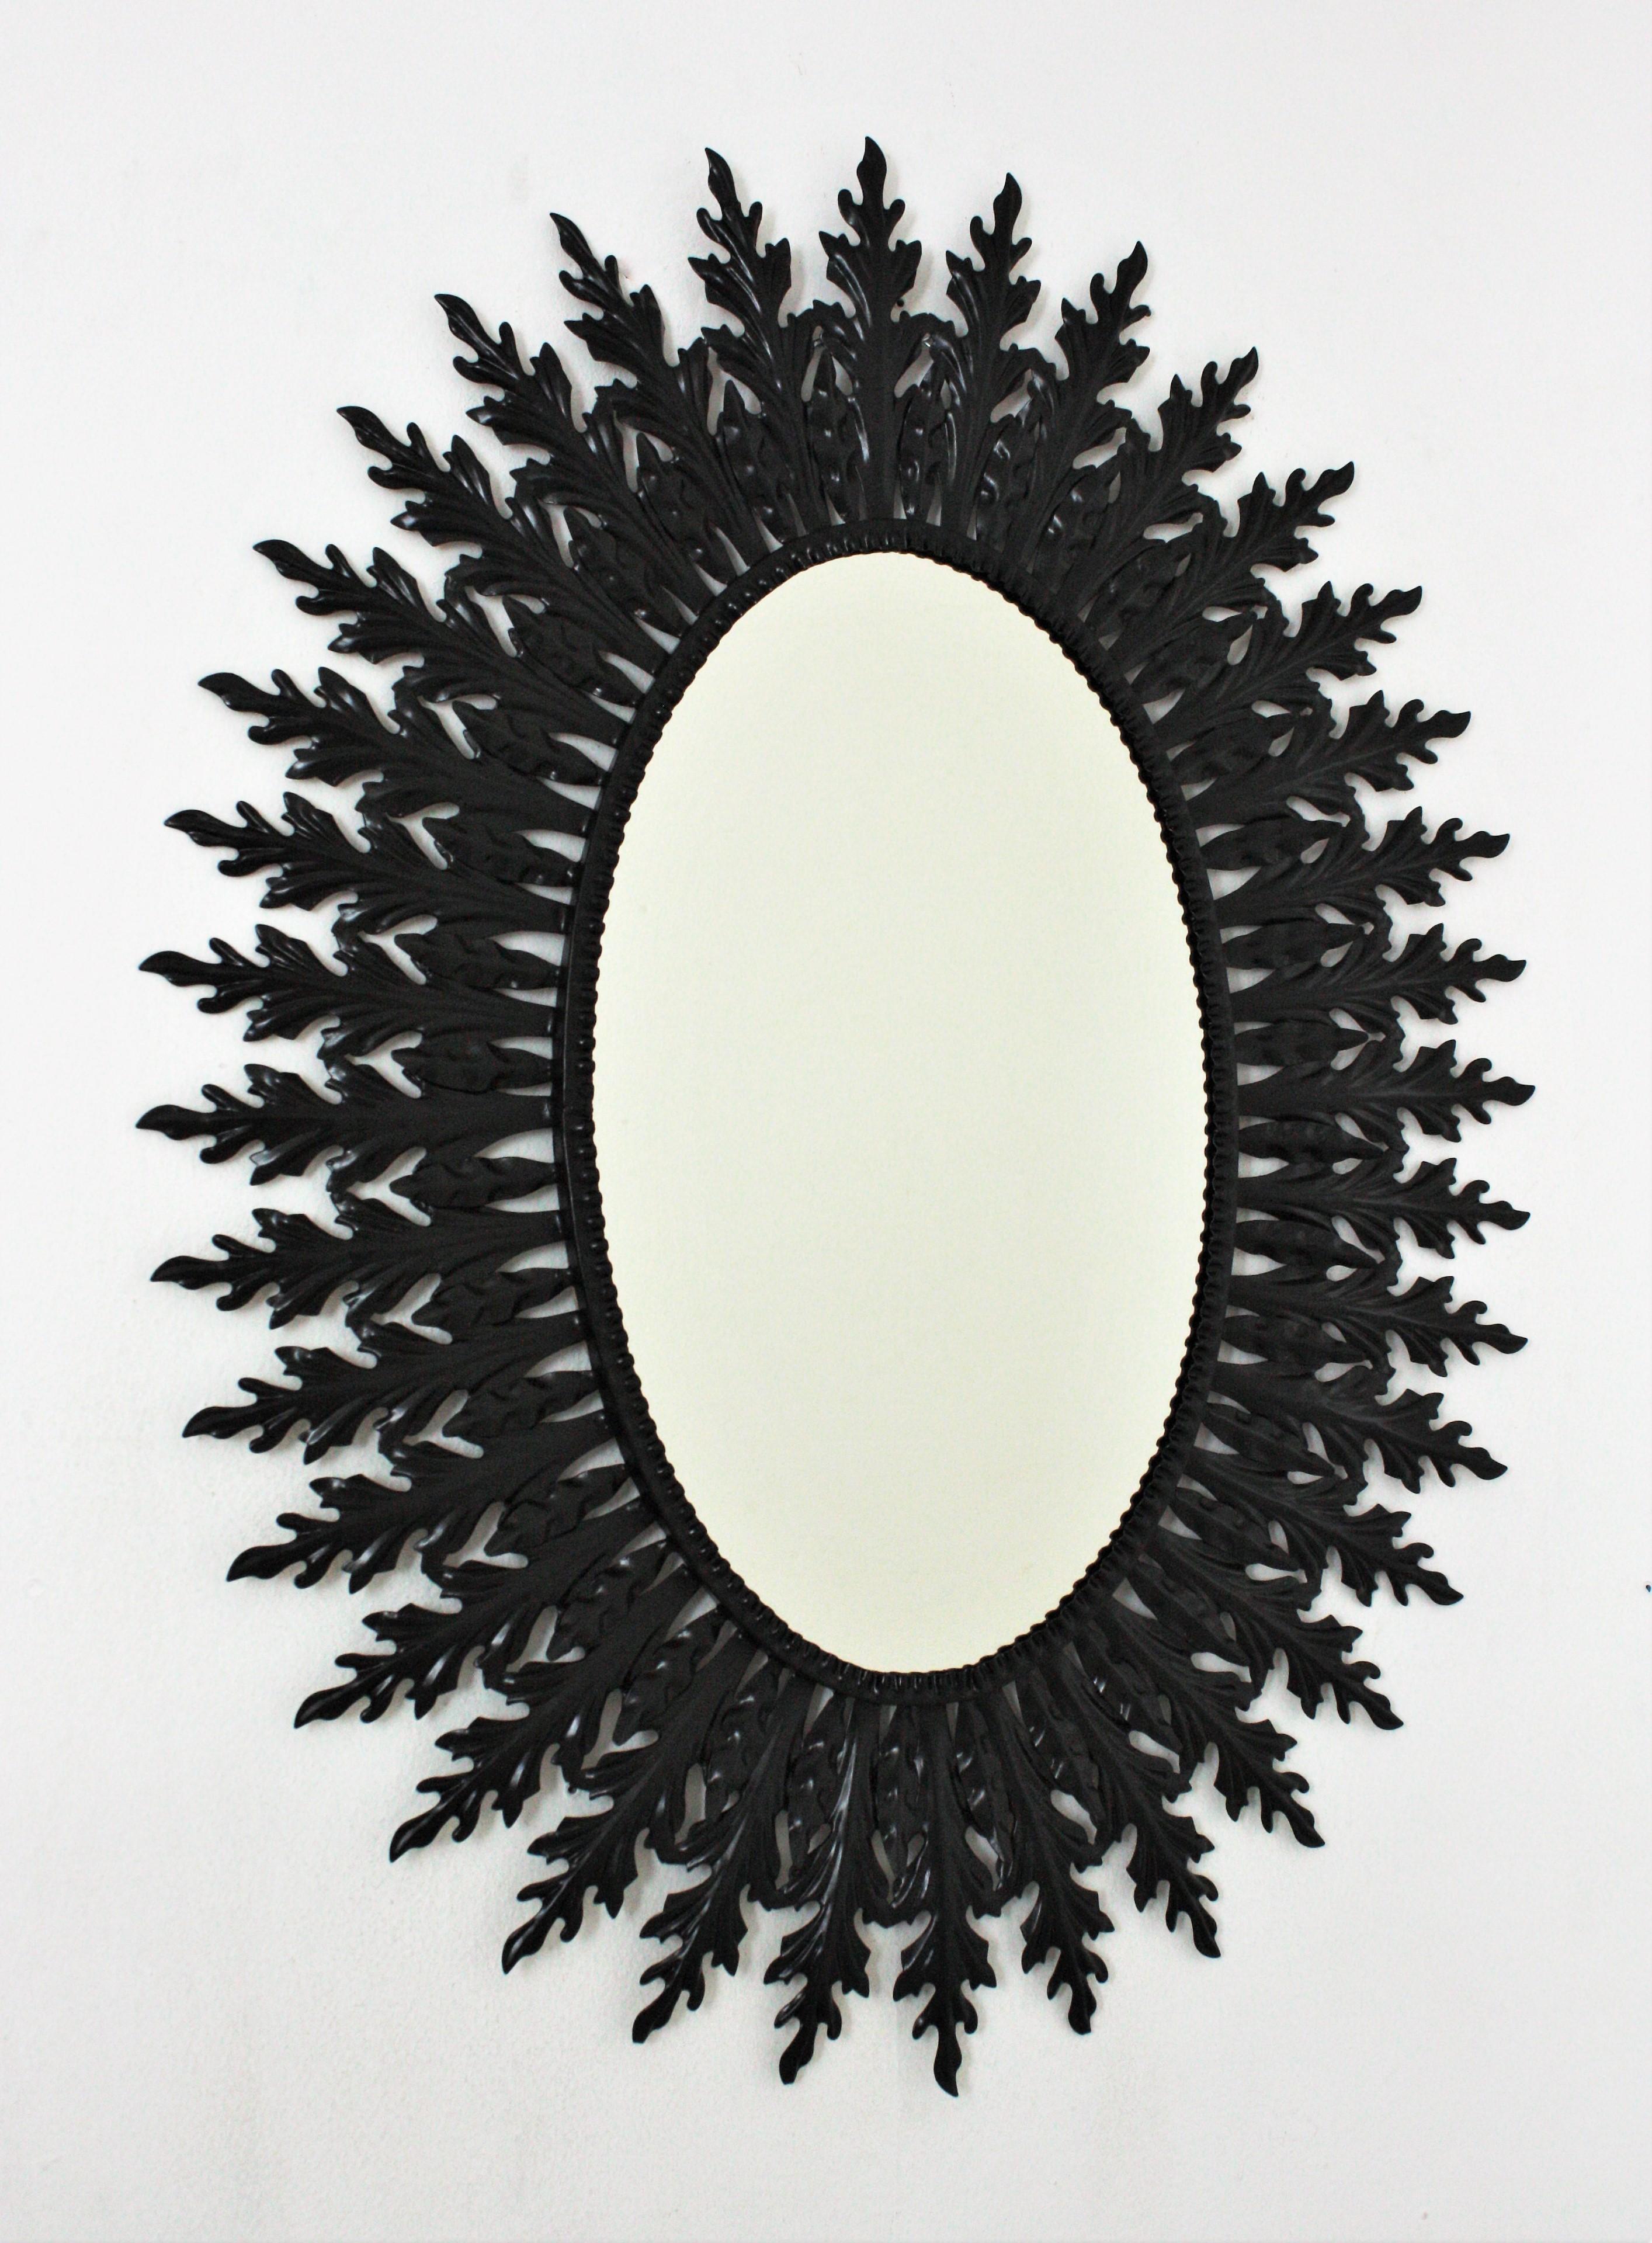 Immense miroir ovale en forme de soleil, fabriqué à la main en métal et peint en noir, Espagne, années 1960.
Le cadre de ce miroir ovale comporte une couche de grandes feuilles et une couche de petites feuilles entourant le verre.
Ce miroir en fer